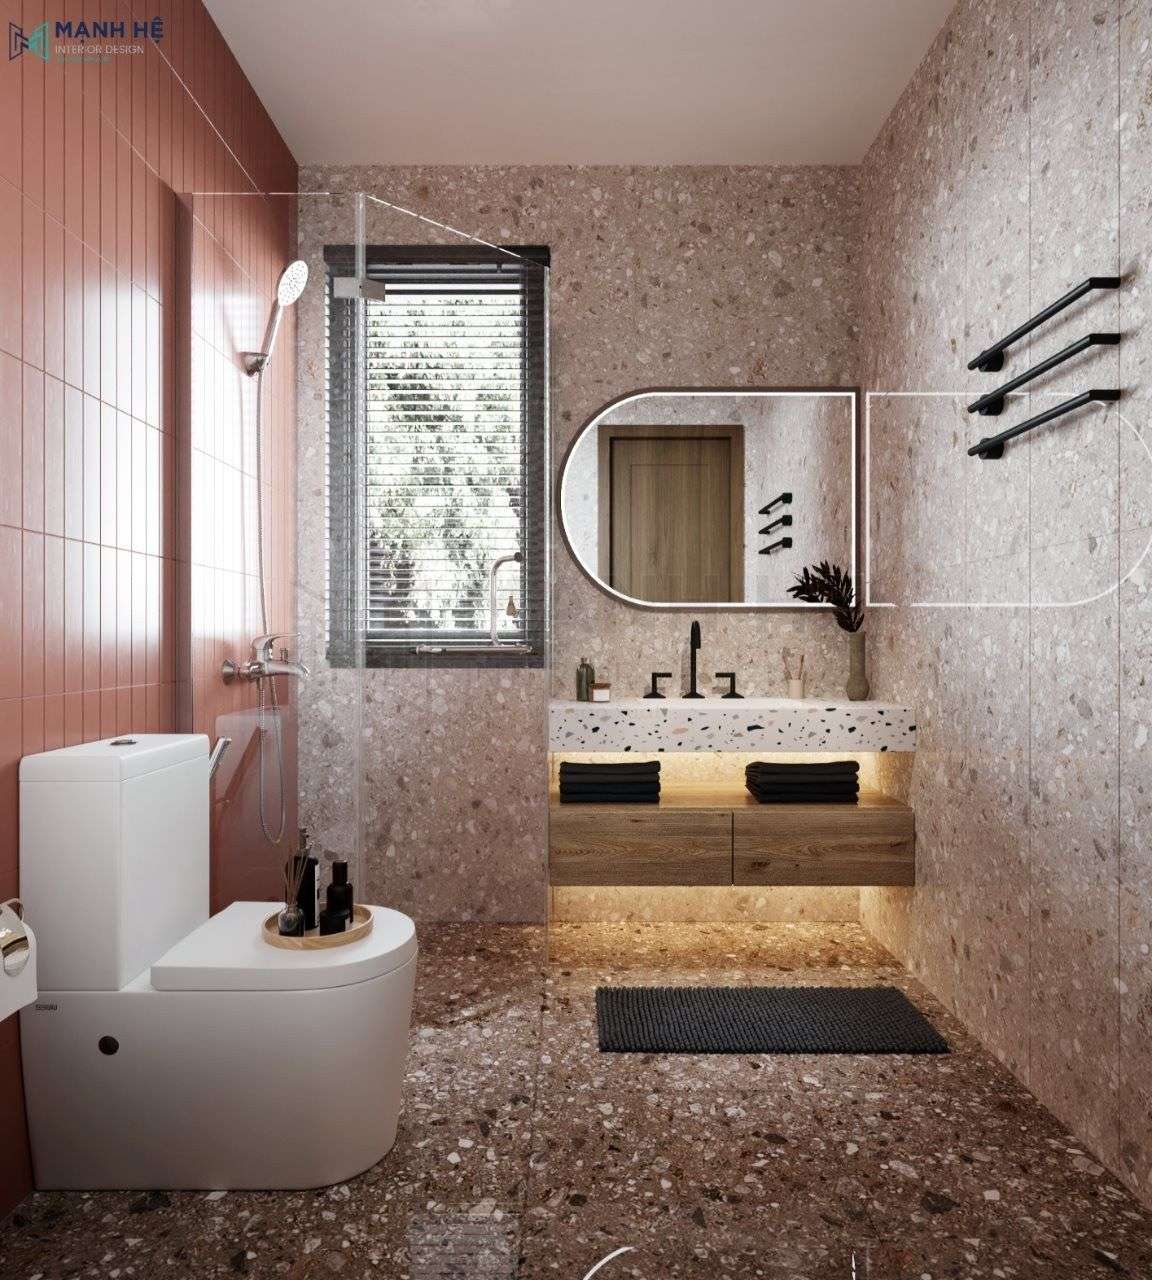 Thiết kế tủ lavabo bằng gỗ công nghiệp giúp phòng tắm căn hộ nhỏ trở nên gọn gàng, đẹp mắt